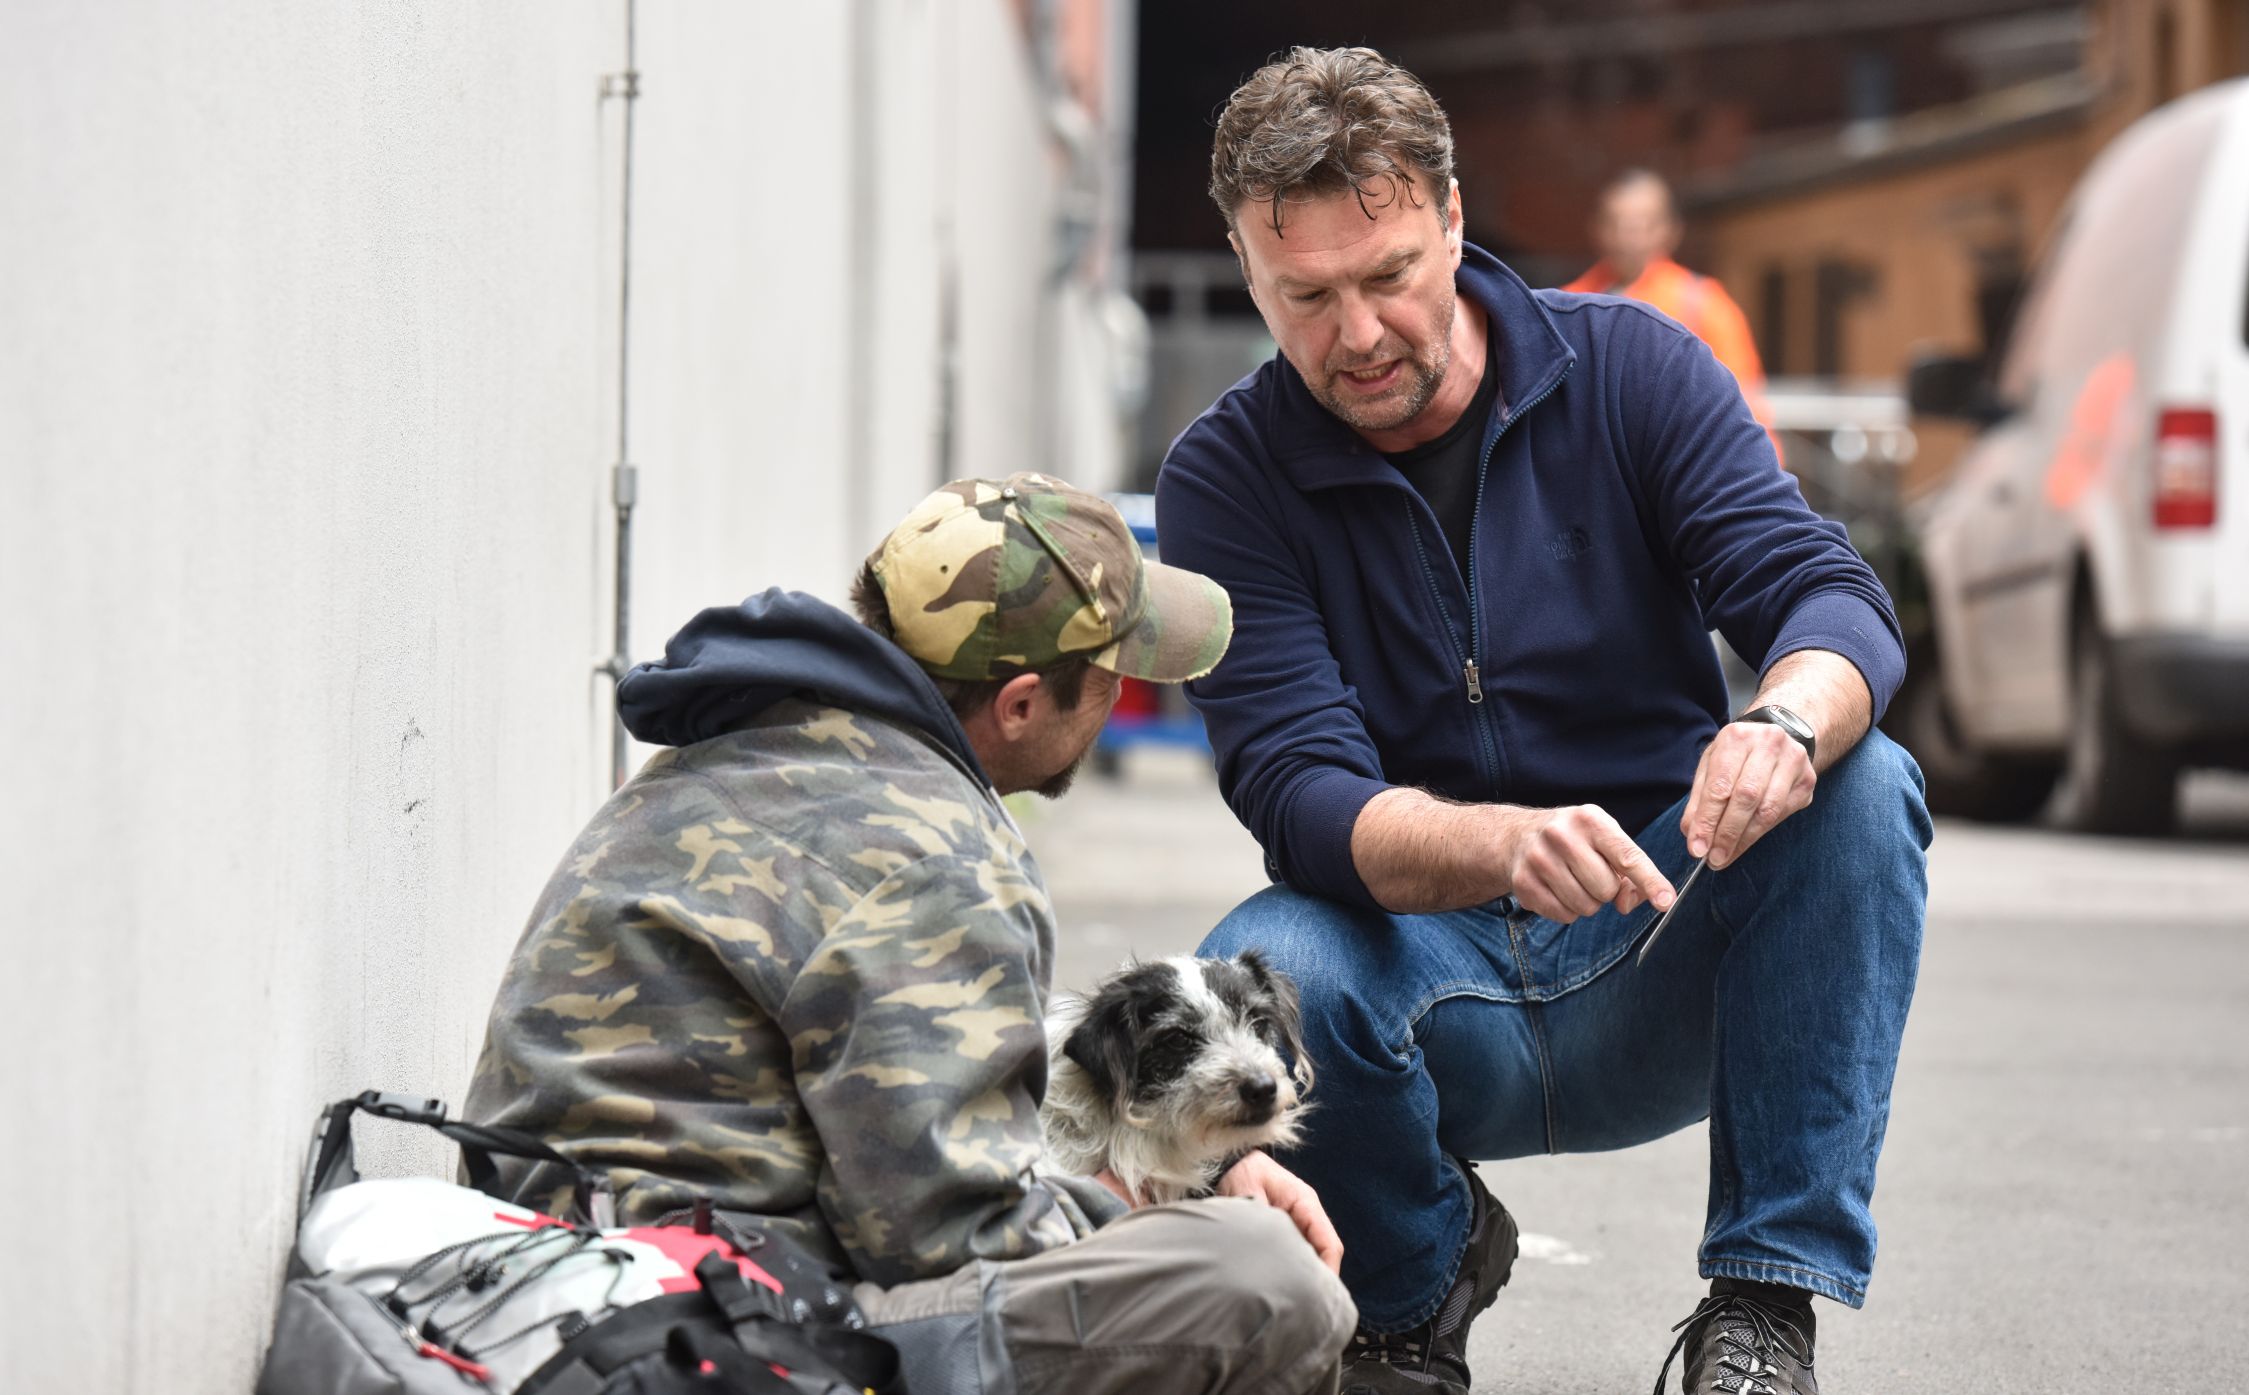 Ein Mann sitzt auf der Straße. Neben ihm steht ein Hund und ein Mann kniet neben ihm und spricht mit dem Mann.